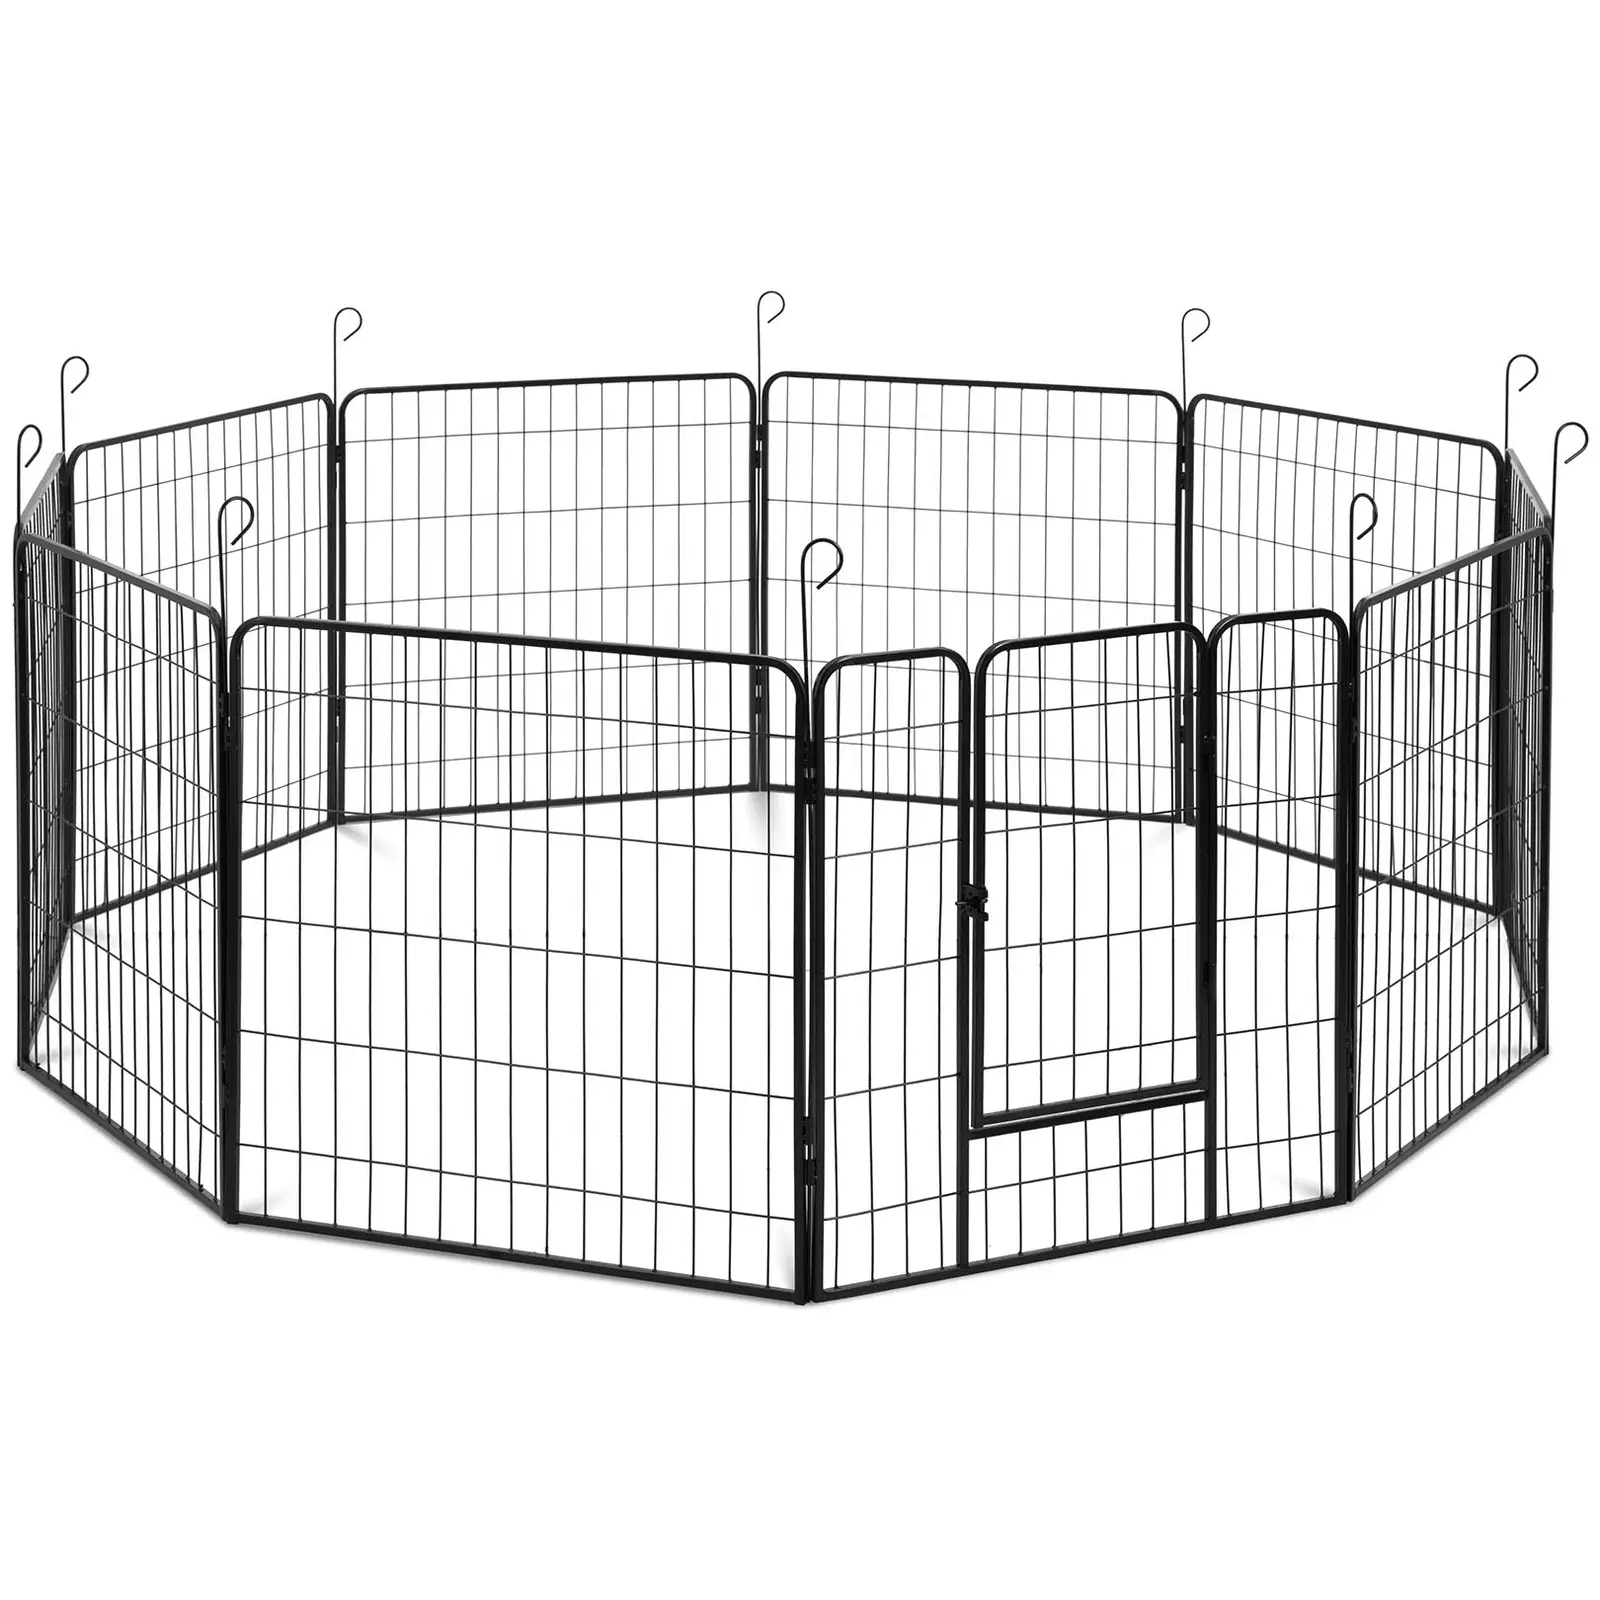 Enclos pour chiots - avec porte - 10 segments modulaires - pour l'intérieur et l'extérieur